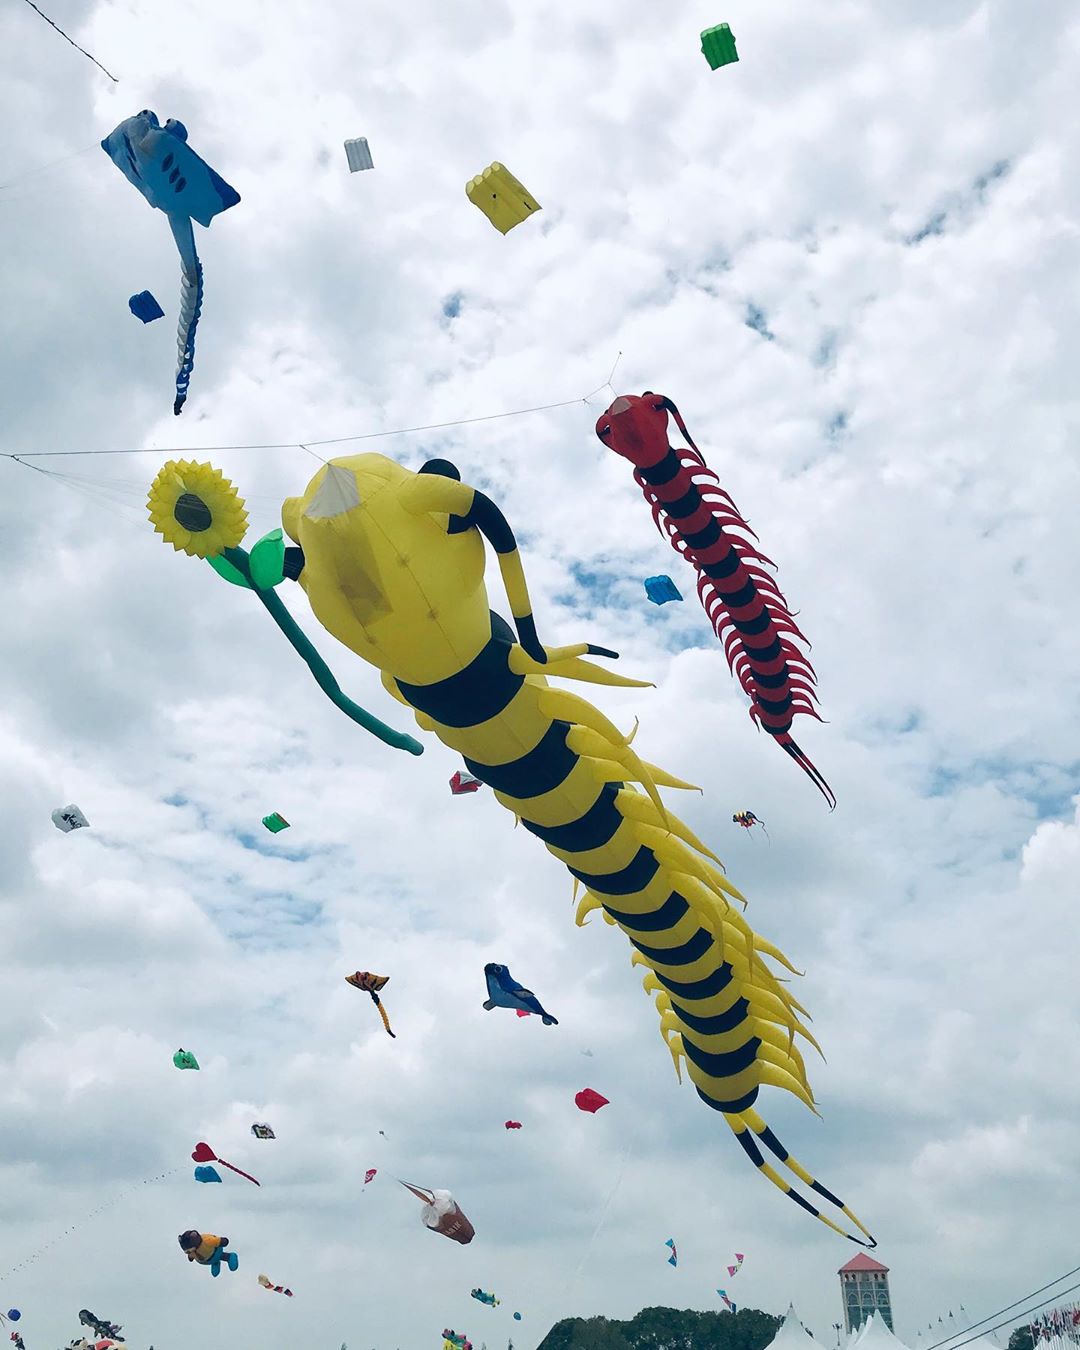 Pasir Gudang World Kite Festival 2020